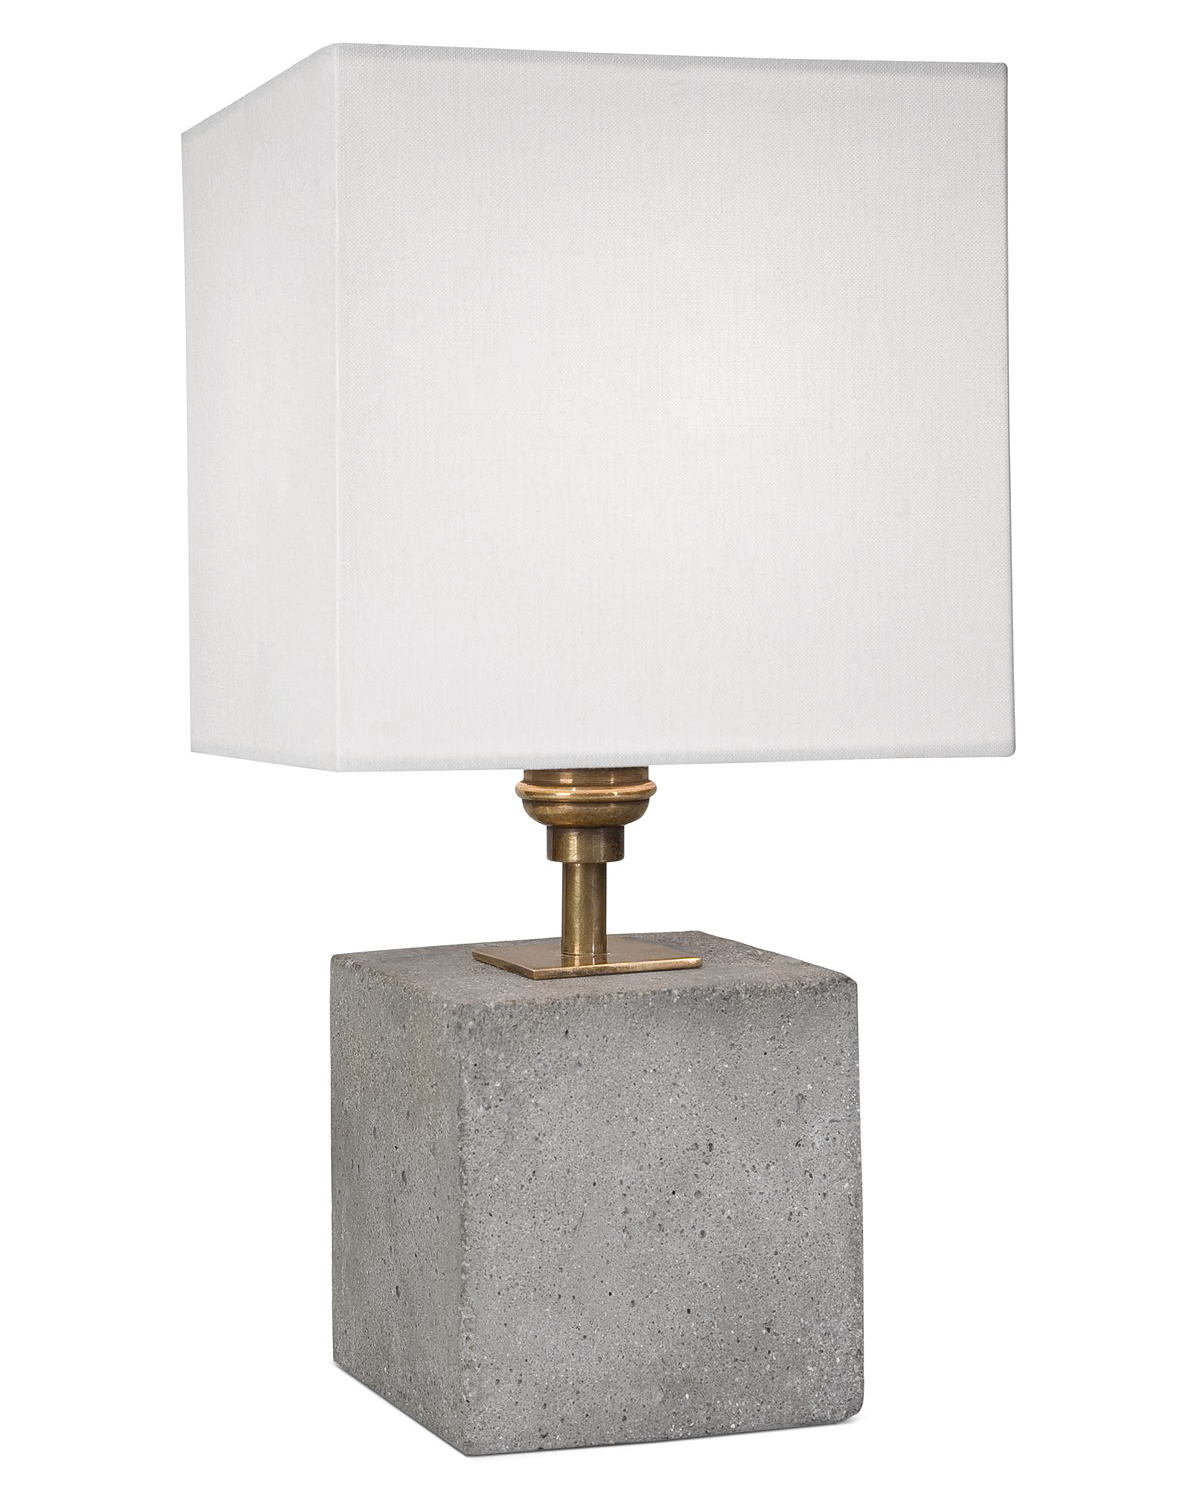 Настольная лампа "Рьети" - это бетонное основание в форме куба с белым абажуром, придаст лаконичную атмосферу для любых комнат в современном стиле.